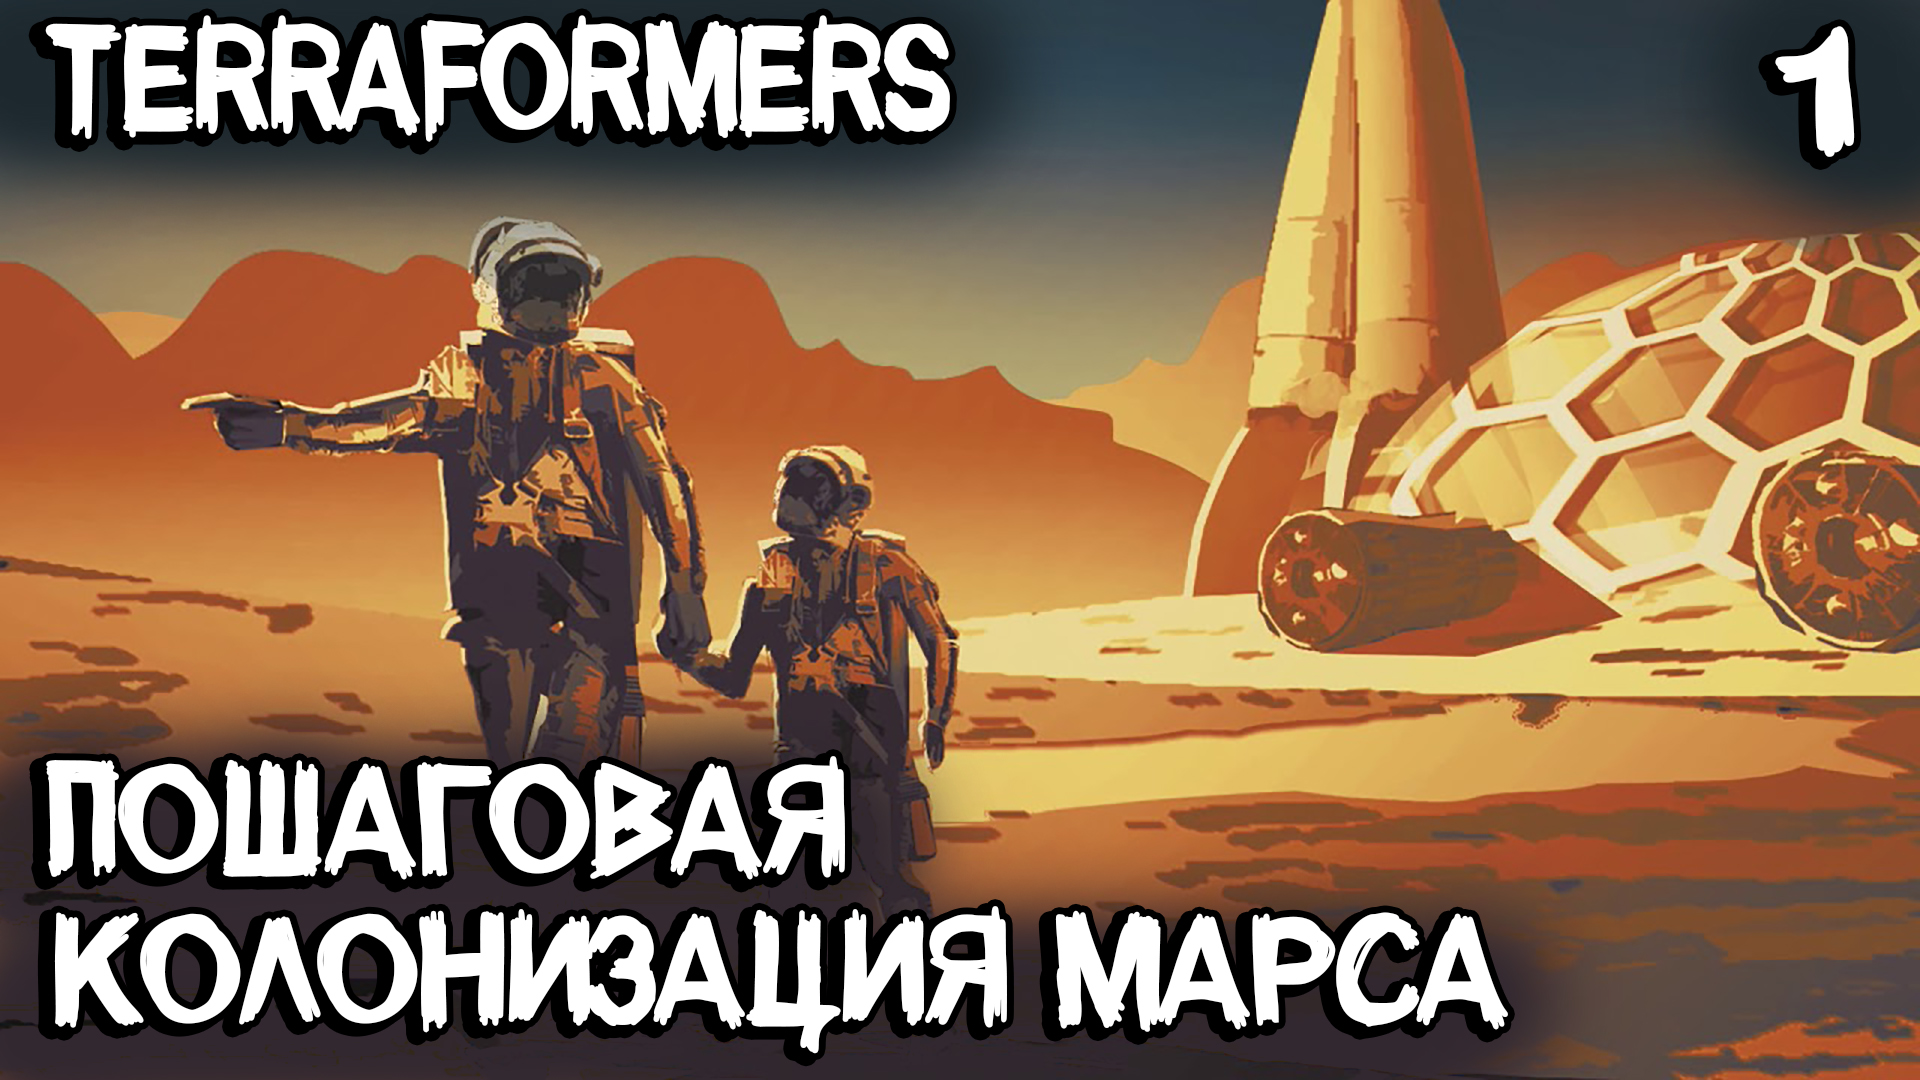 Terraformers - обзор, прохождение и подробный гайд как играть и с чего начать колонизацию Марса #1